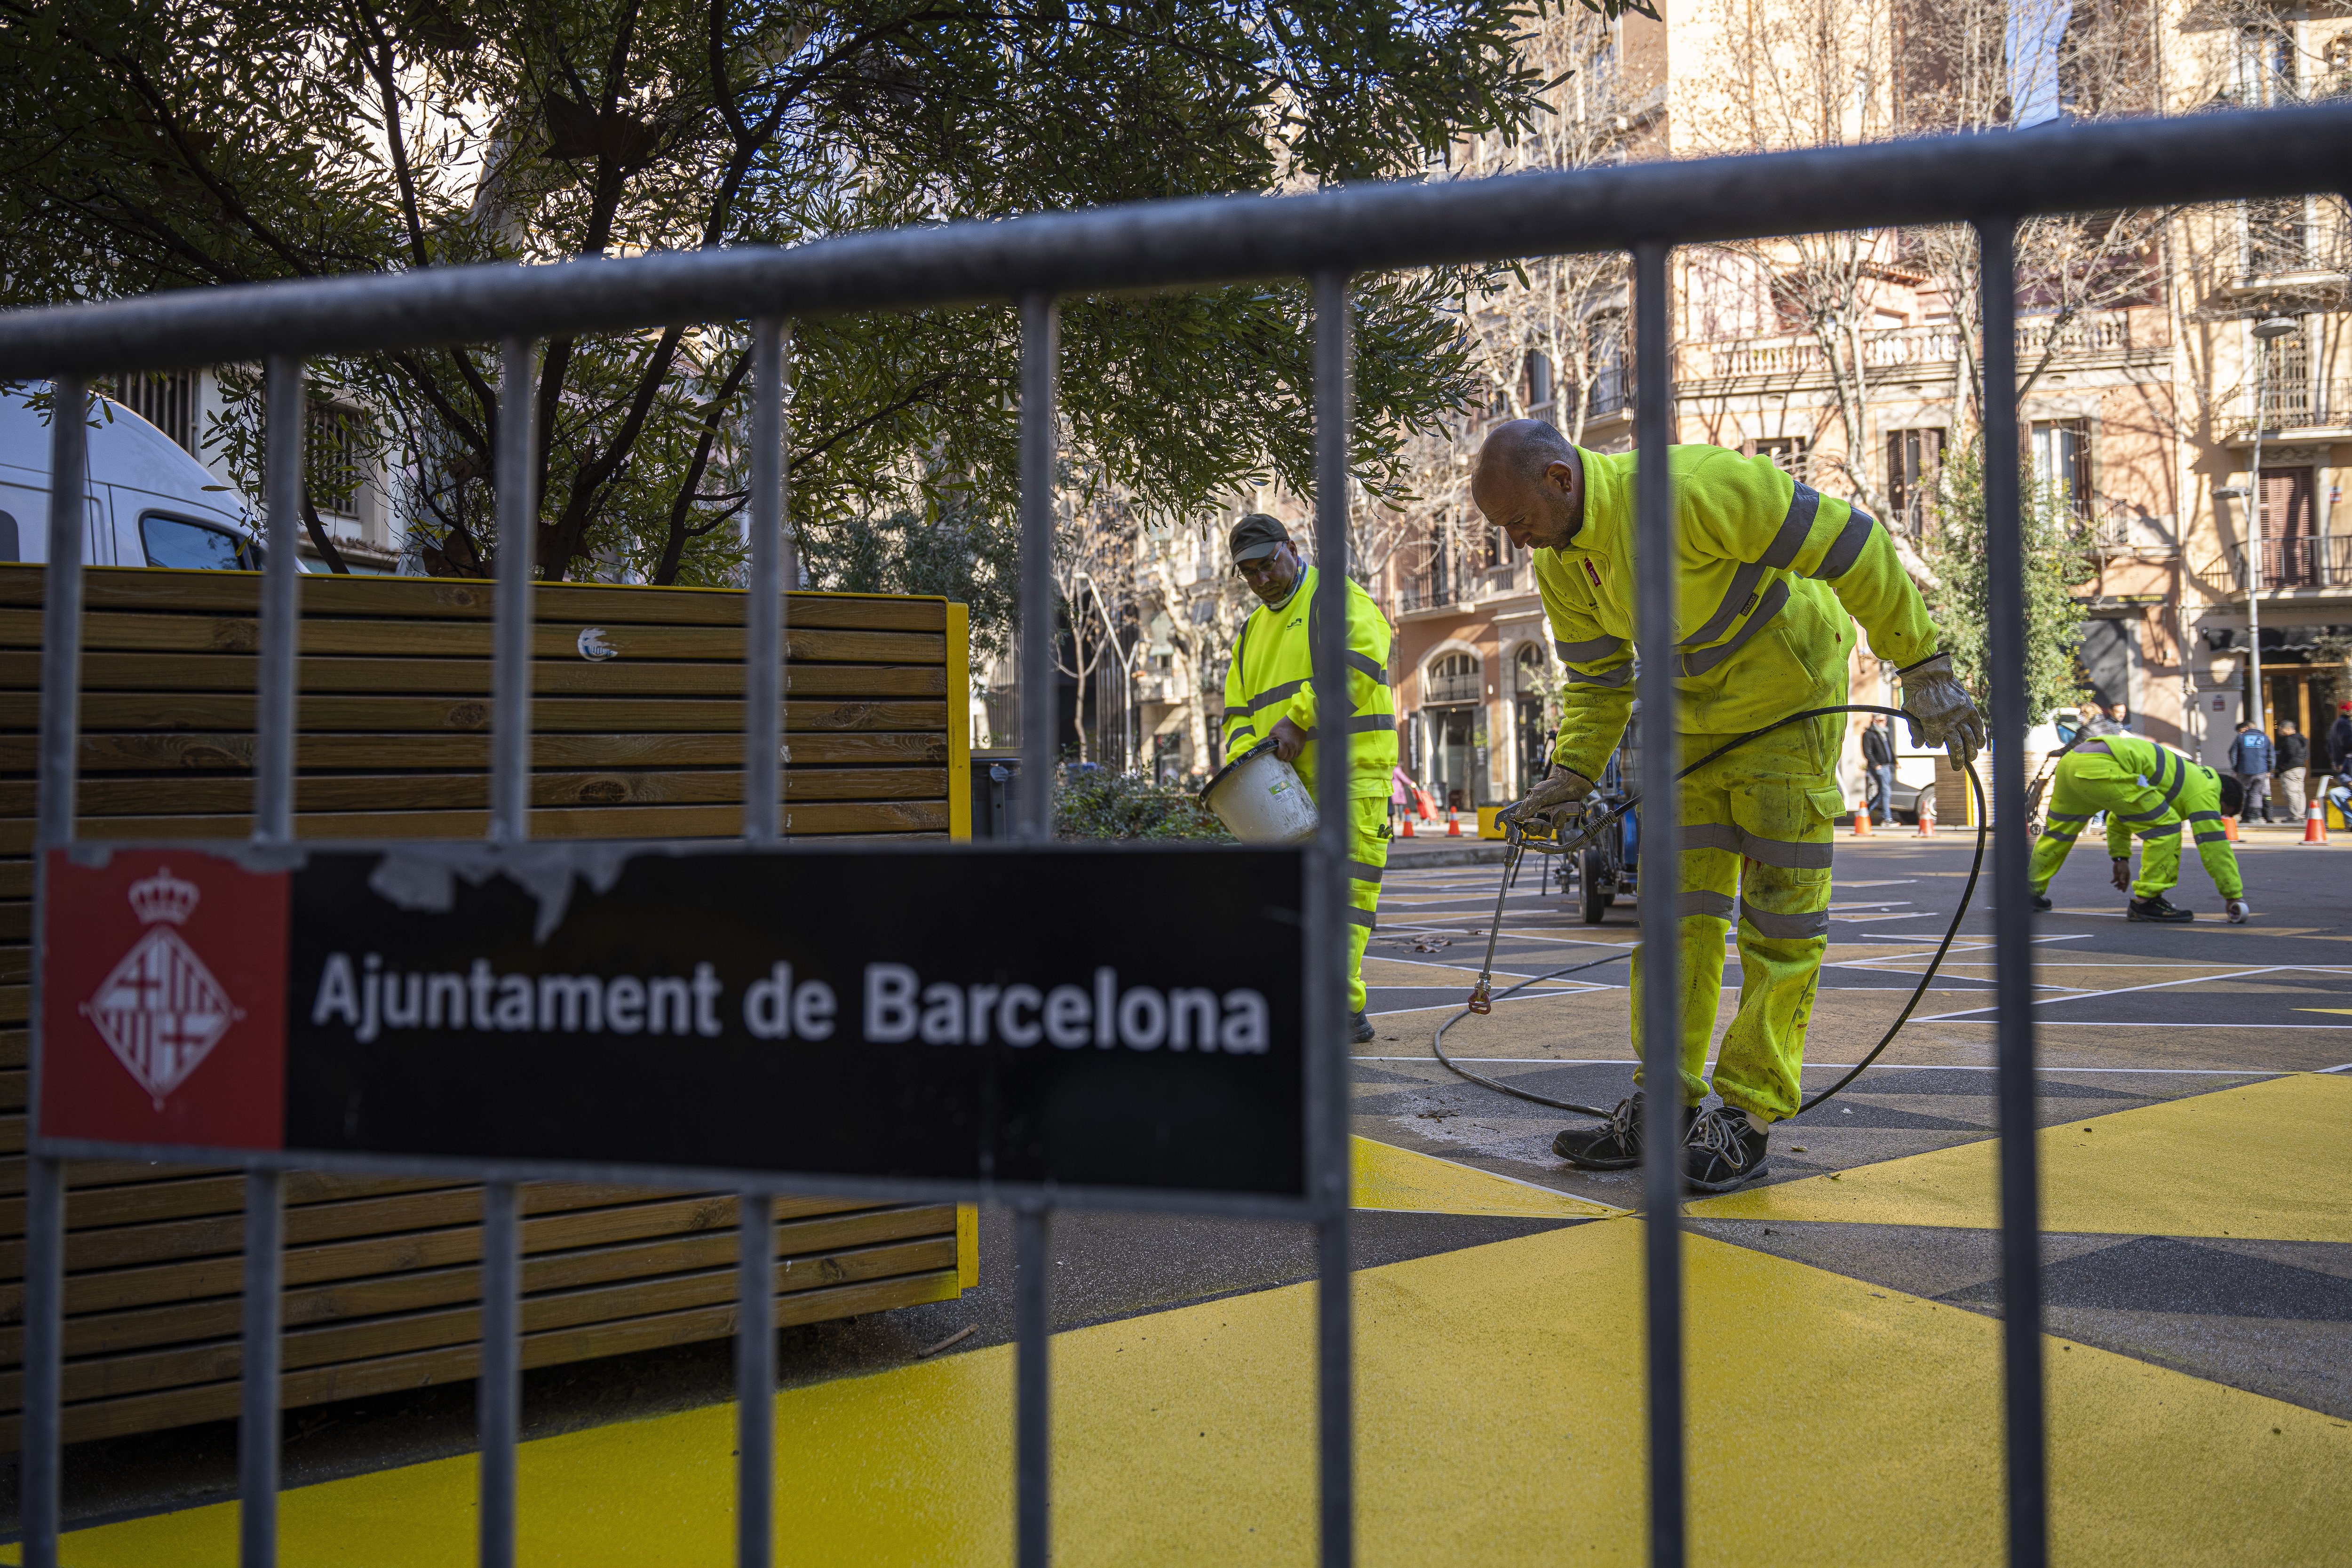 La UE confirma que ha rebut una denúncia sobre les superilles de Barcelona i el seu finançament